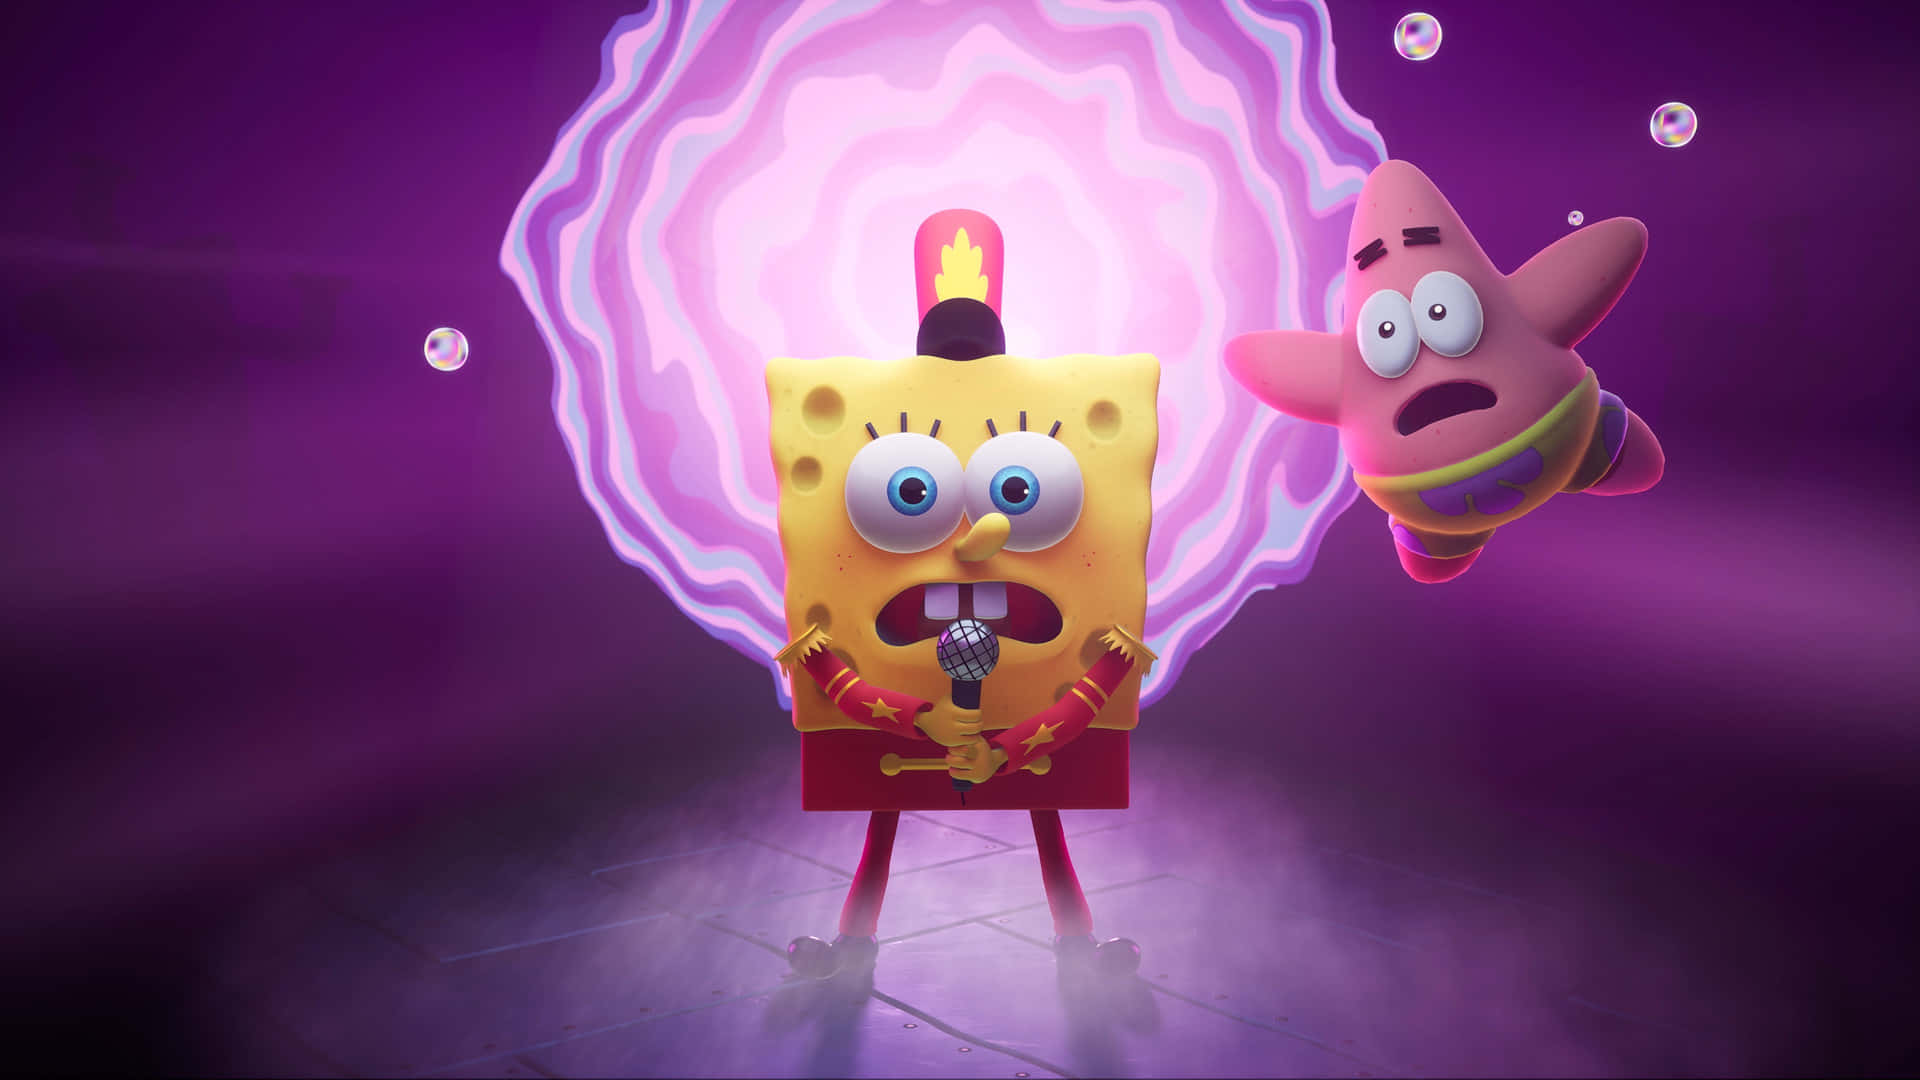 Skrattahögt Med Denna Roliga Spongebob-bild